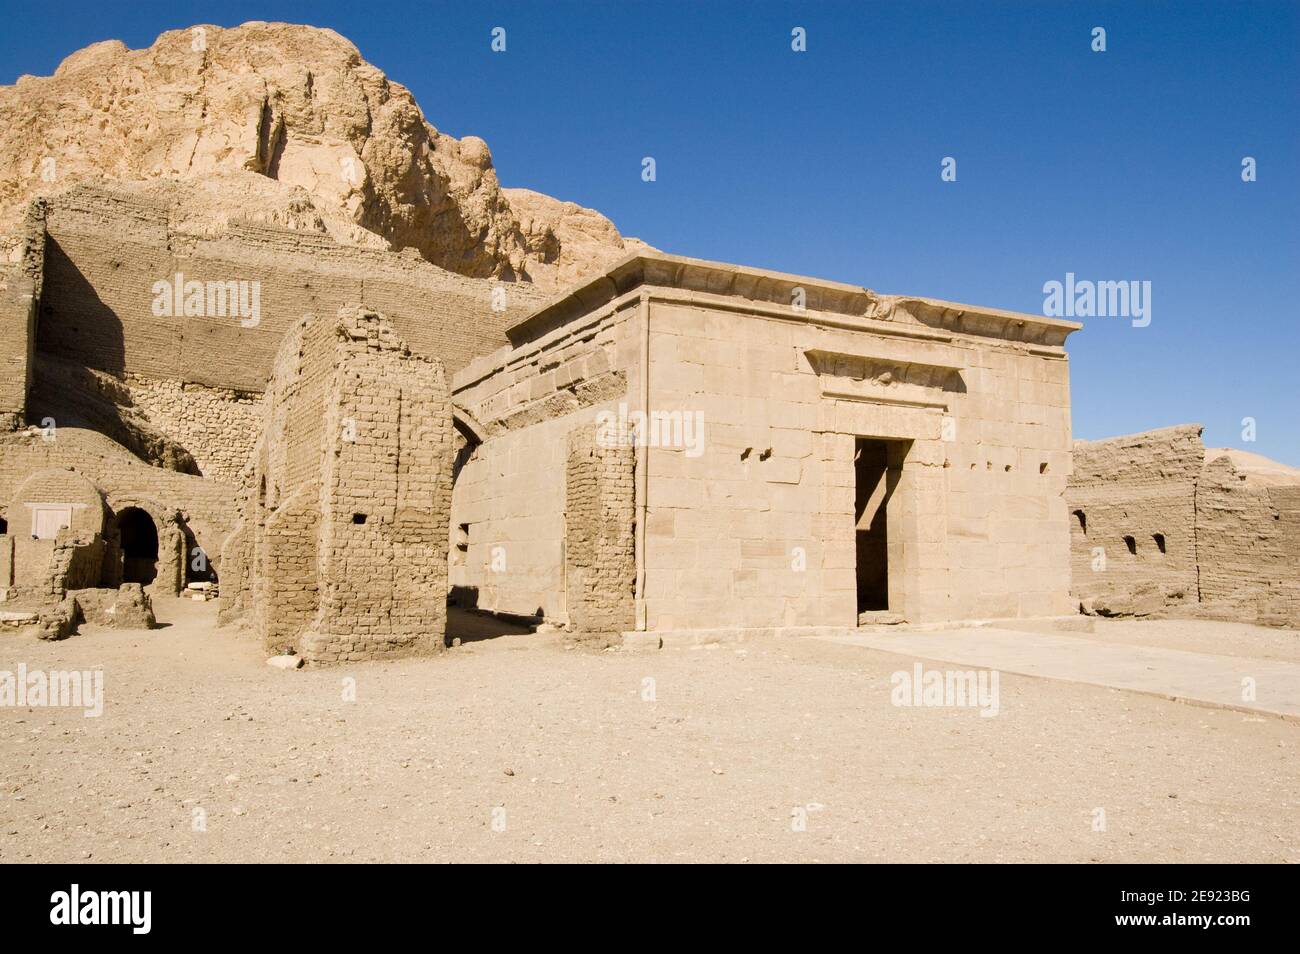 L'ancien temple égyptien, construit à l'époque de Ptolémée IV au 3ème siècle av. J.-C. à Deir el Medina, Louxor. Ruine ancienne, plus de 1000 ans. Banque D'Images